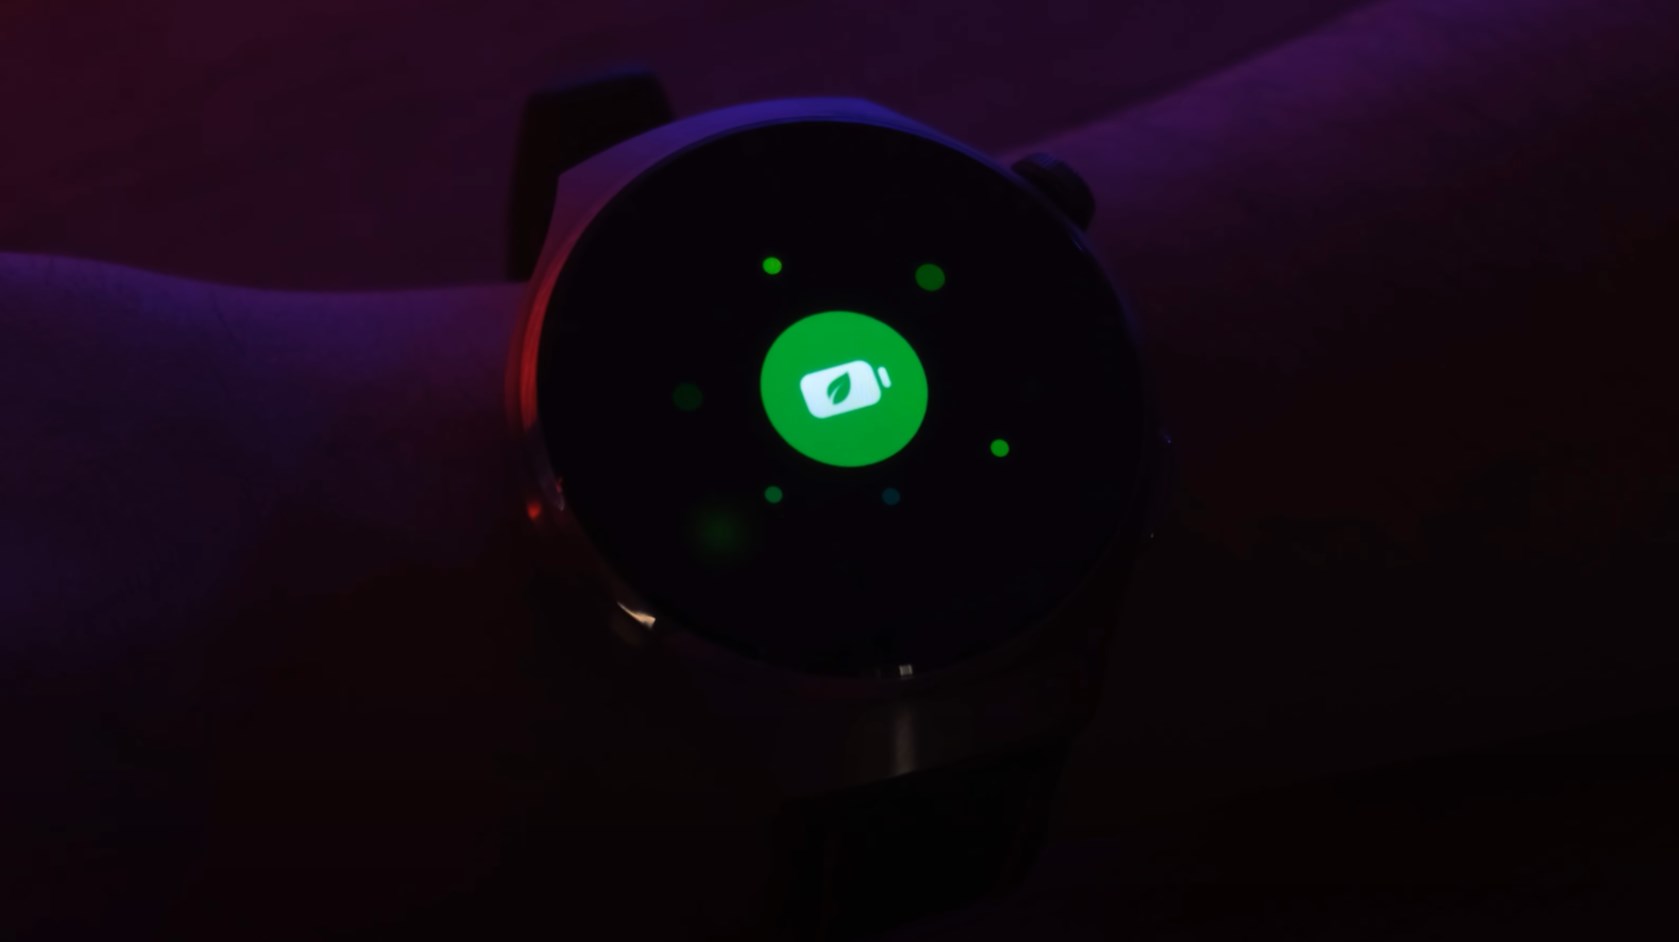 Huawei Watch 4 Pro inceleme - Öksürüğünüzden ölçüm yapan saat!